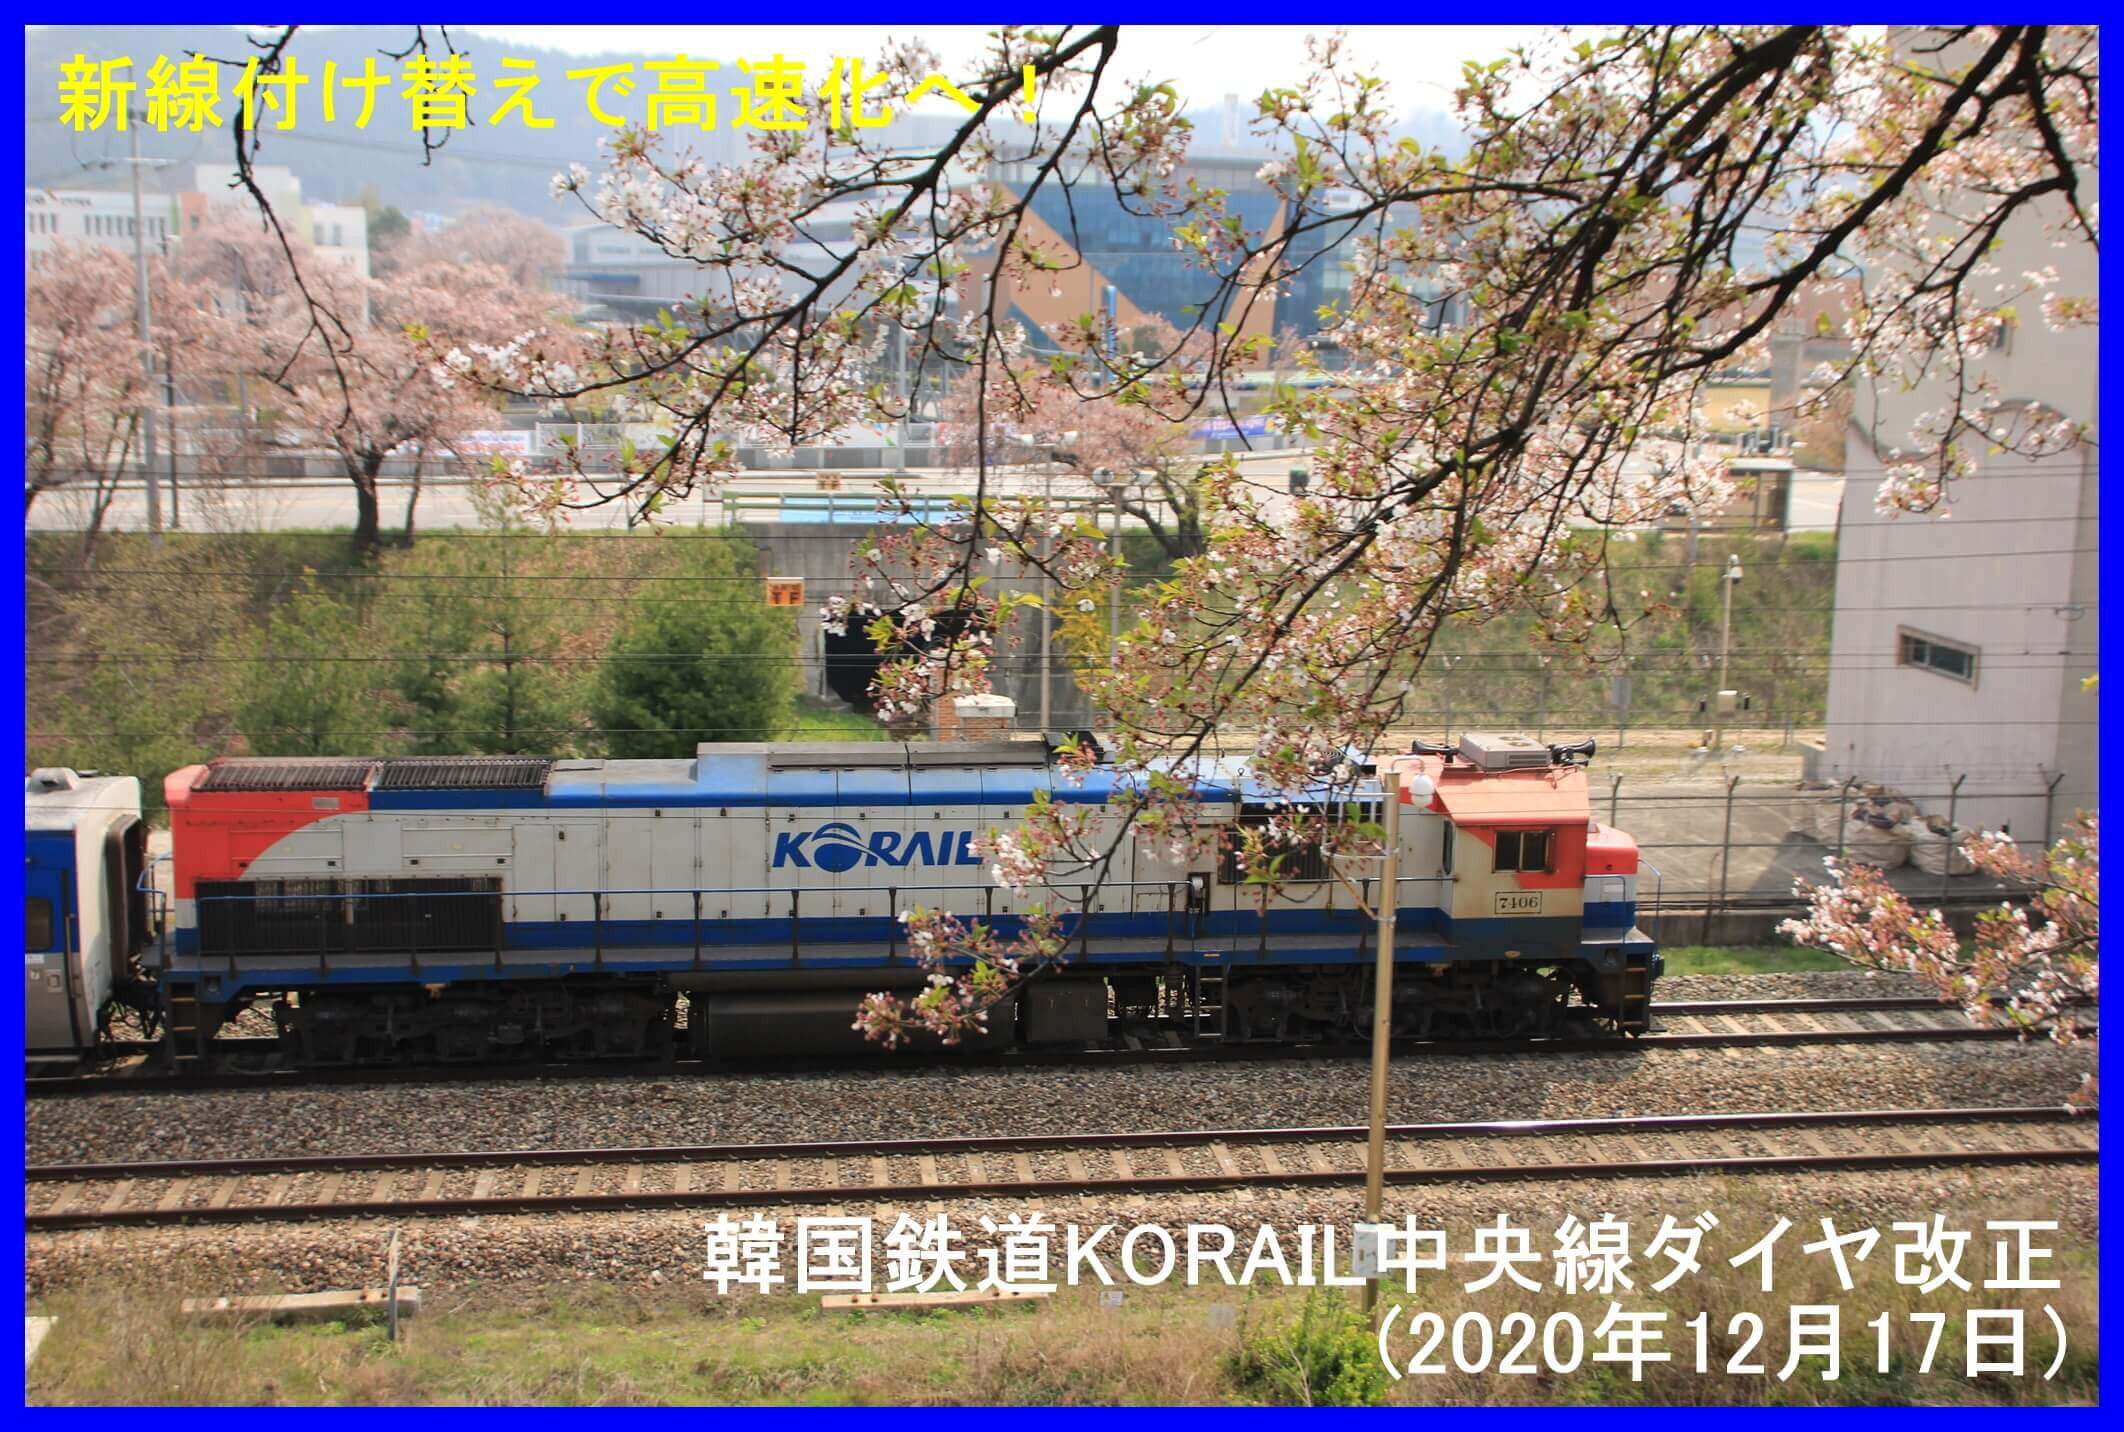 新線付け替えで高速化へ！　韓国鉄道KORAIL中央線ダイヤ改正(2020年12月17日)